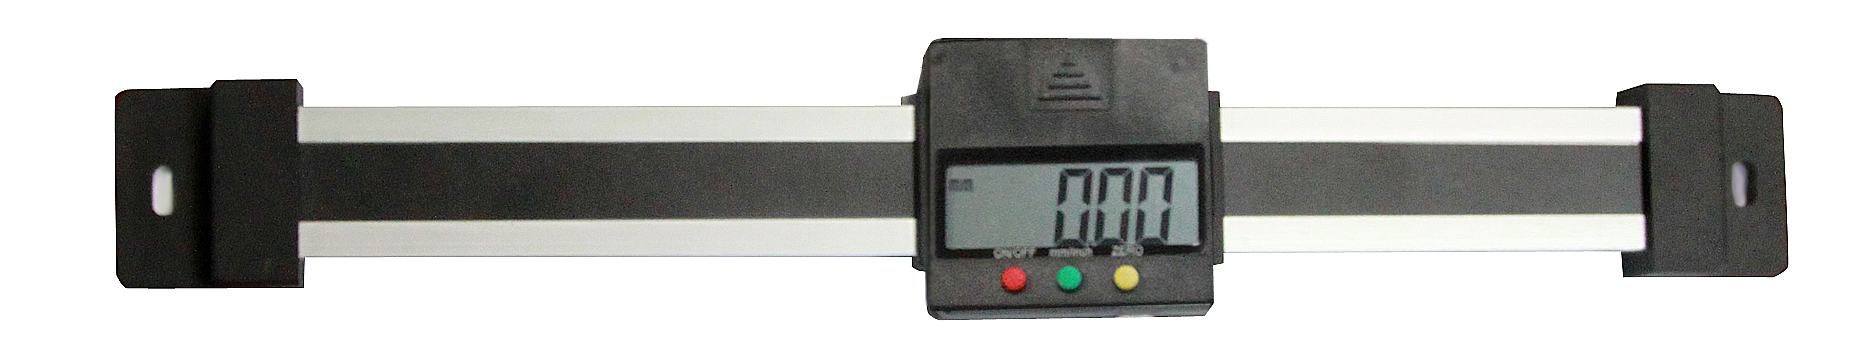 Digital kapazitives Messsystem DIN 862 Einbau Messschieber 600 mm waagerecht 